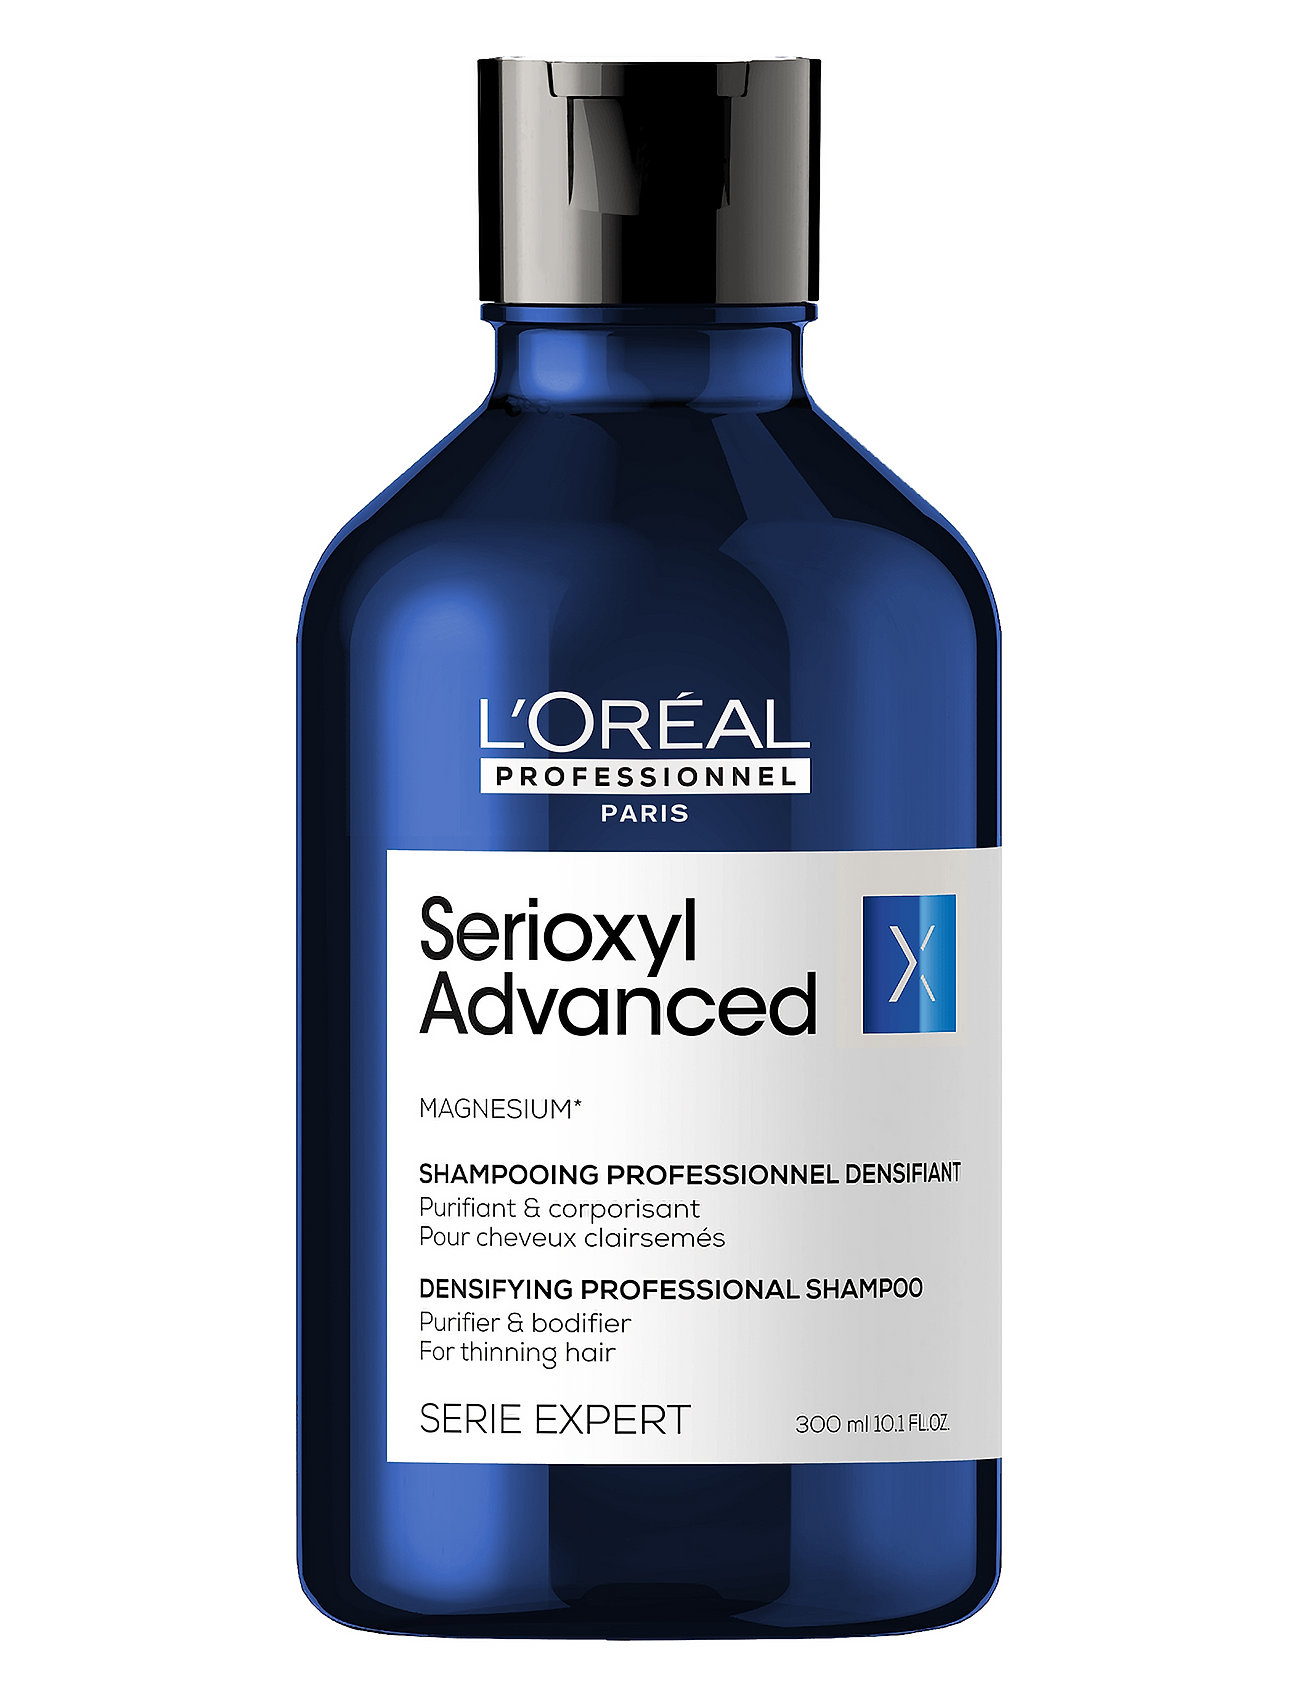 "L'Oréal Professionnel" "Serioxyl Advanced Purifier & Bodifier Shampoo Nude L'Oréal